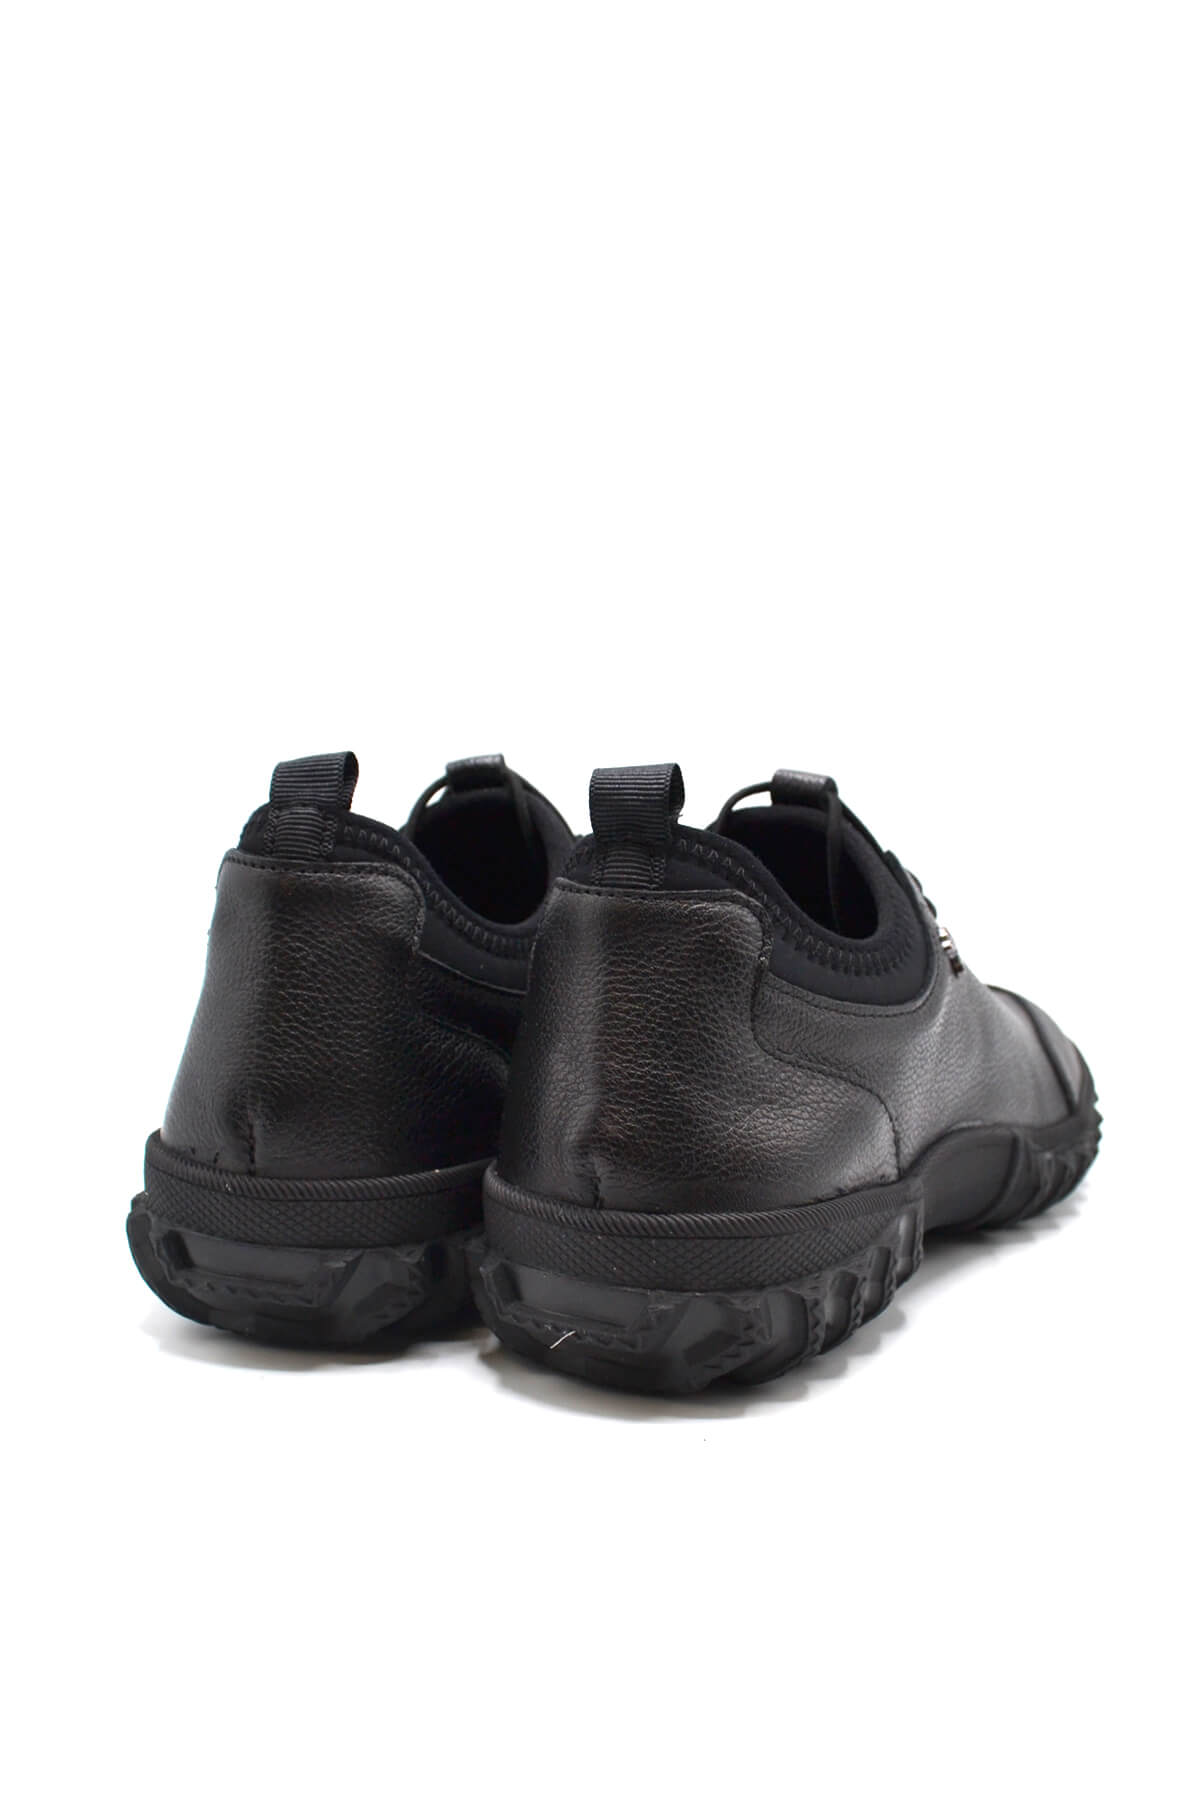 Kadın Comfort Deri Ayakkabı Siyah 2255201K - Thumbnail